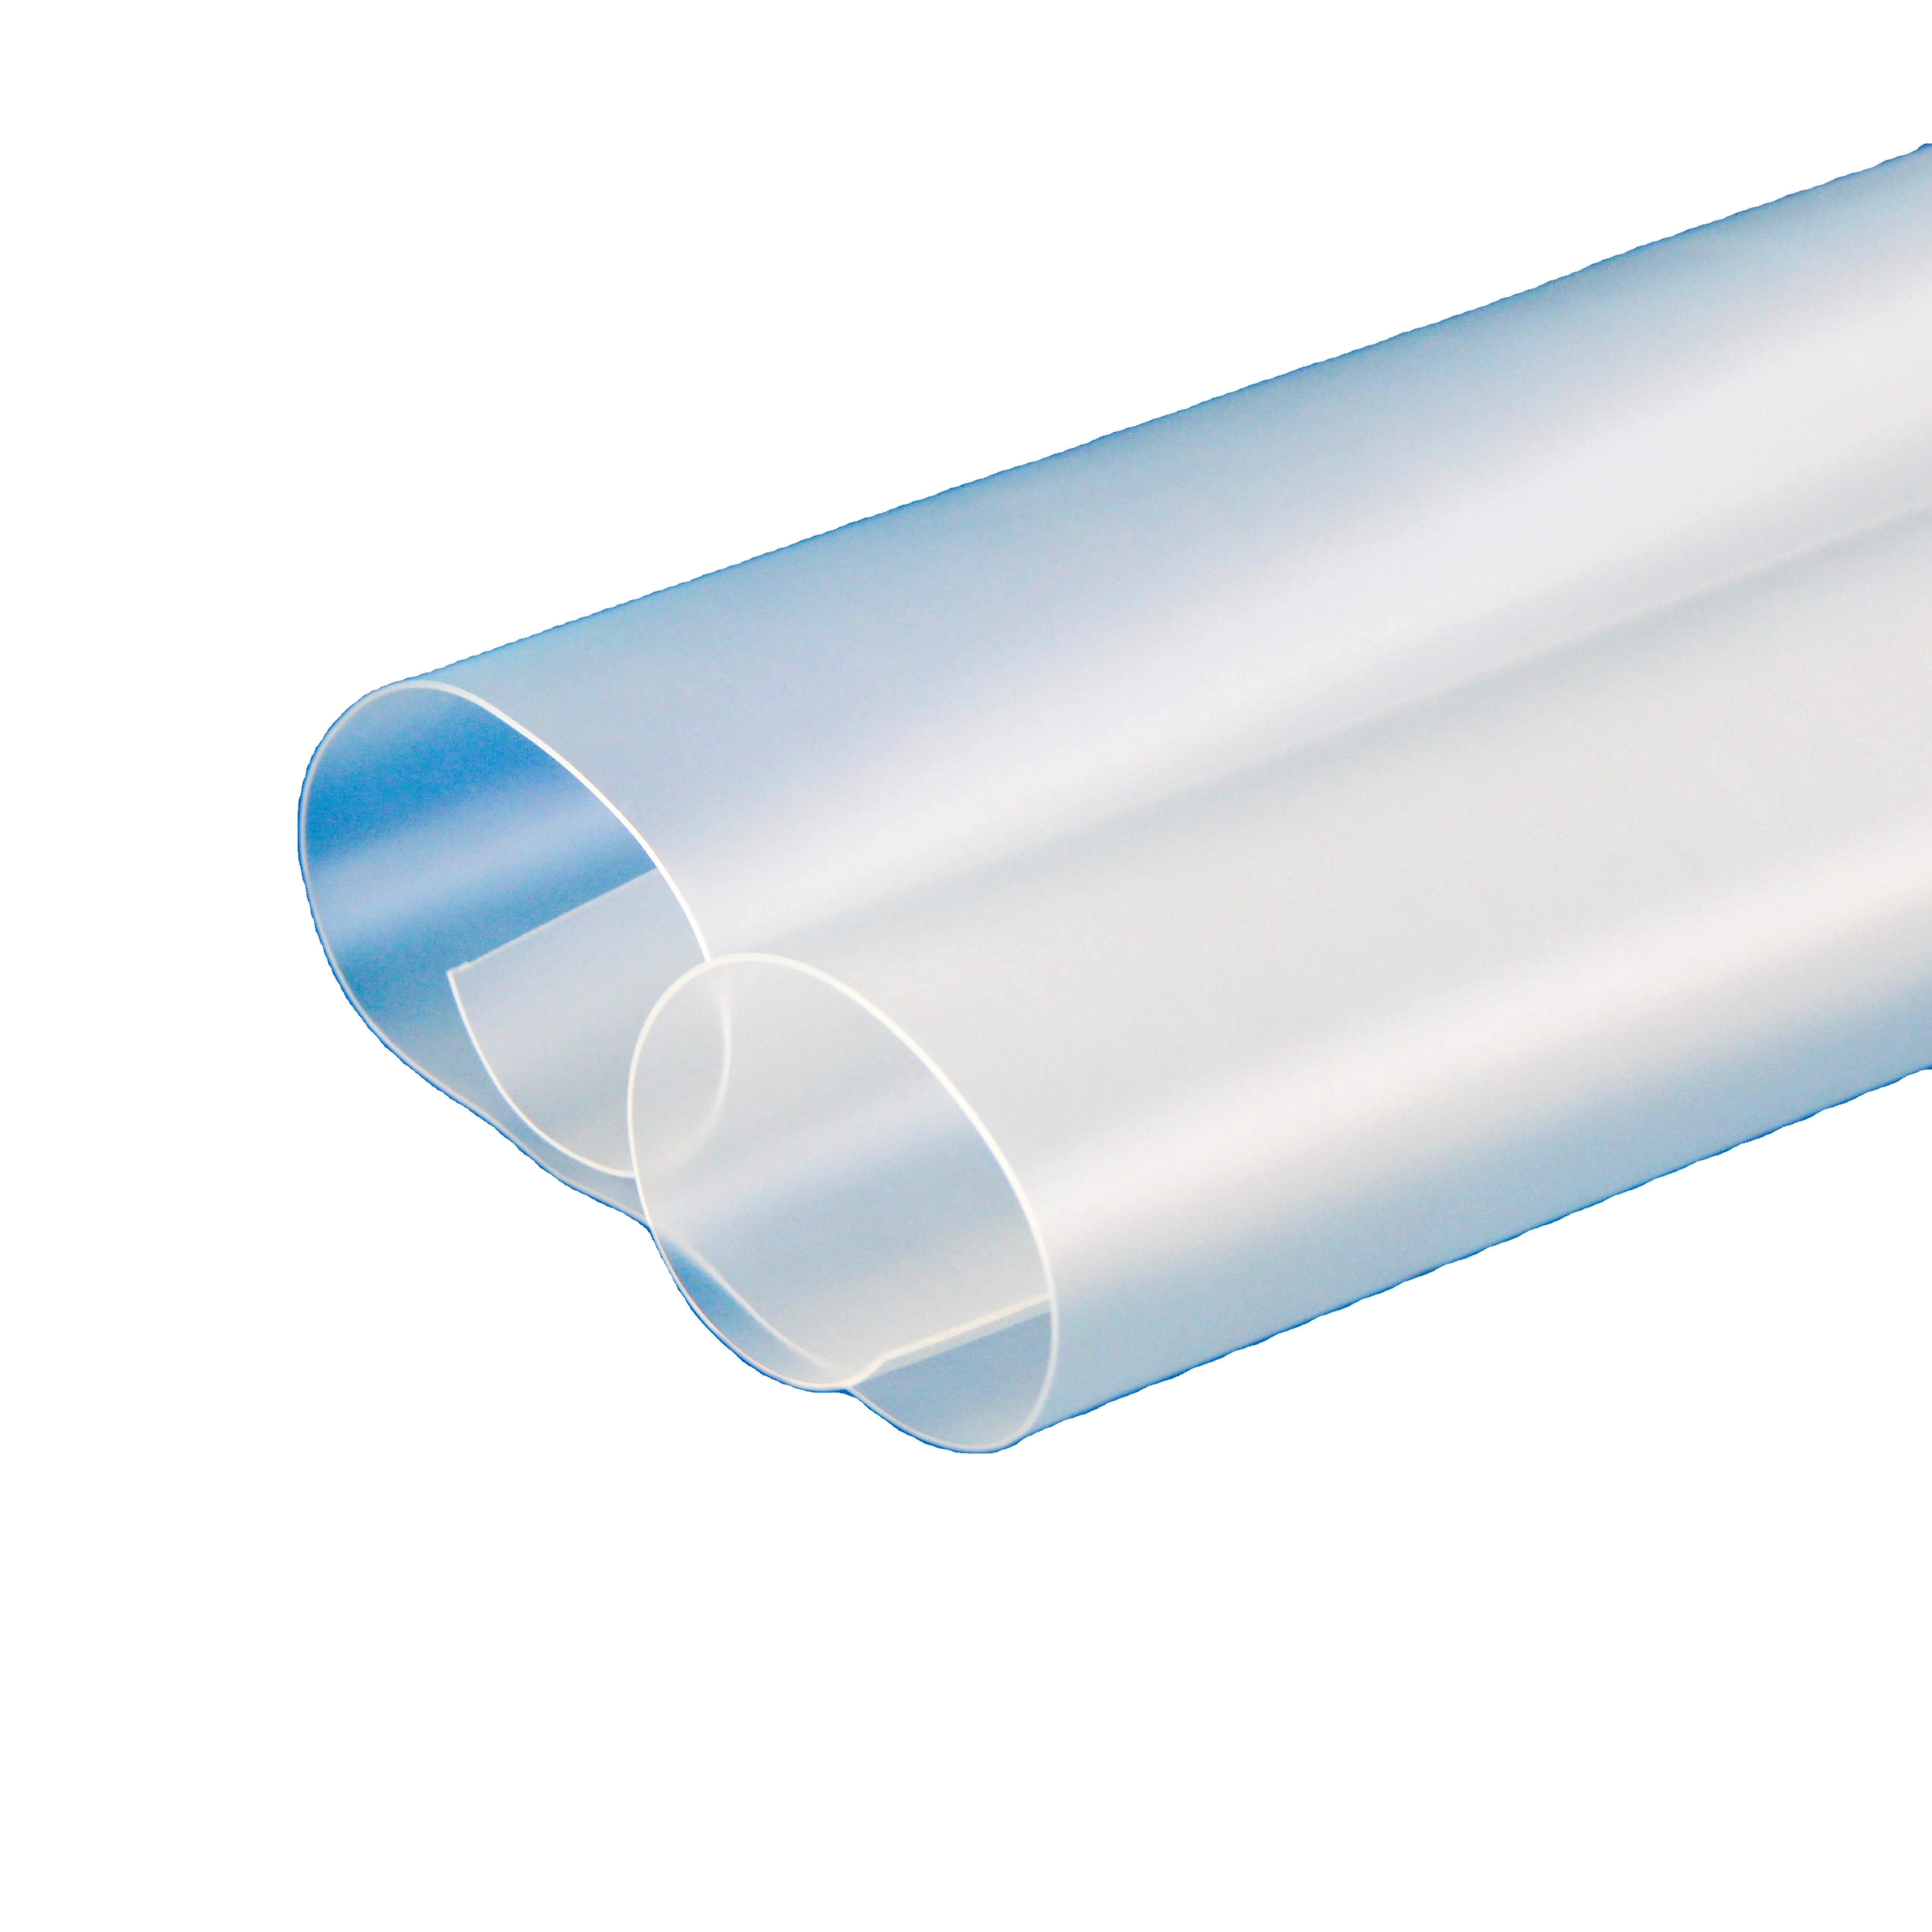 Sandite nhà máy cung cấp cho kính chắn gió kính chống đạn Urethane dựa trên chất đàn hồi nhựa nhiệt dẻo polyurethane TPU tấm phim